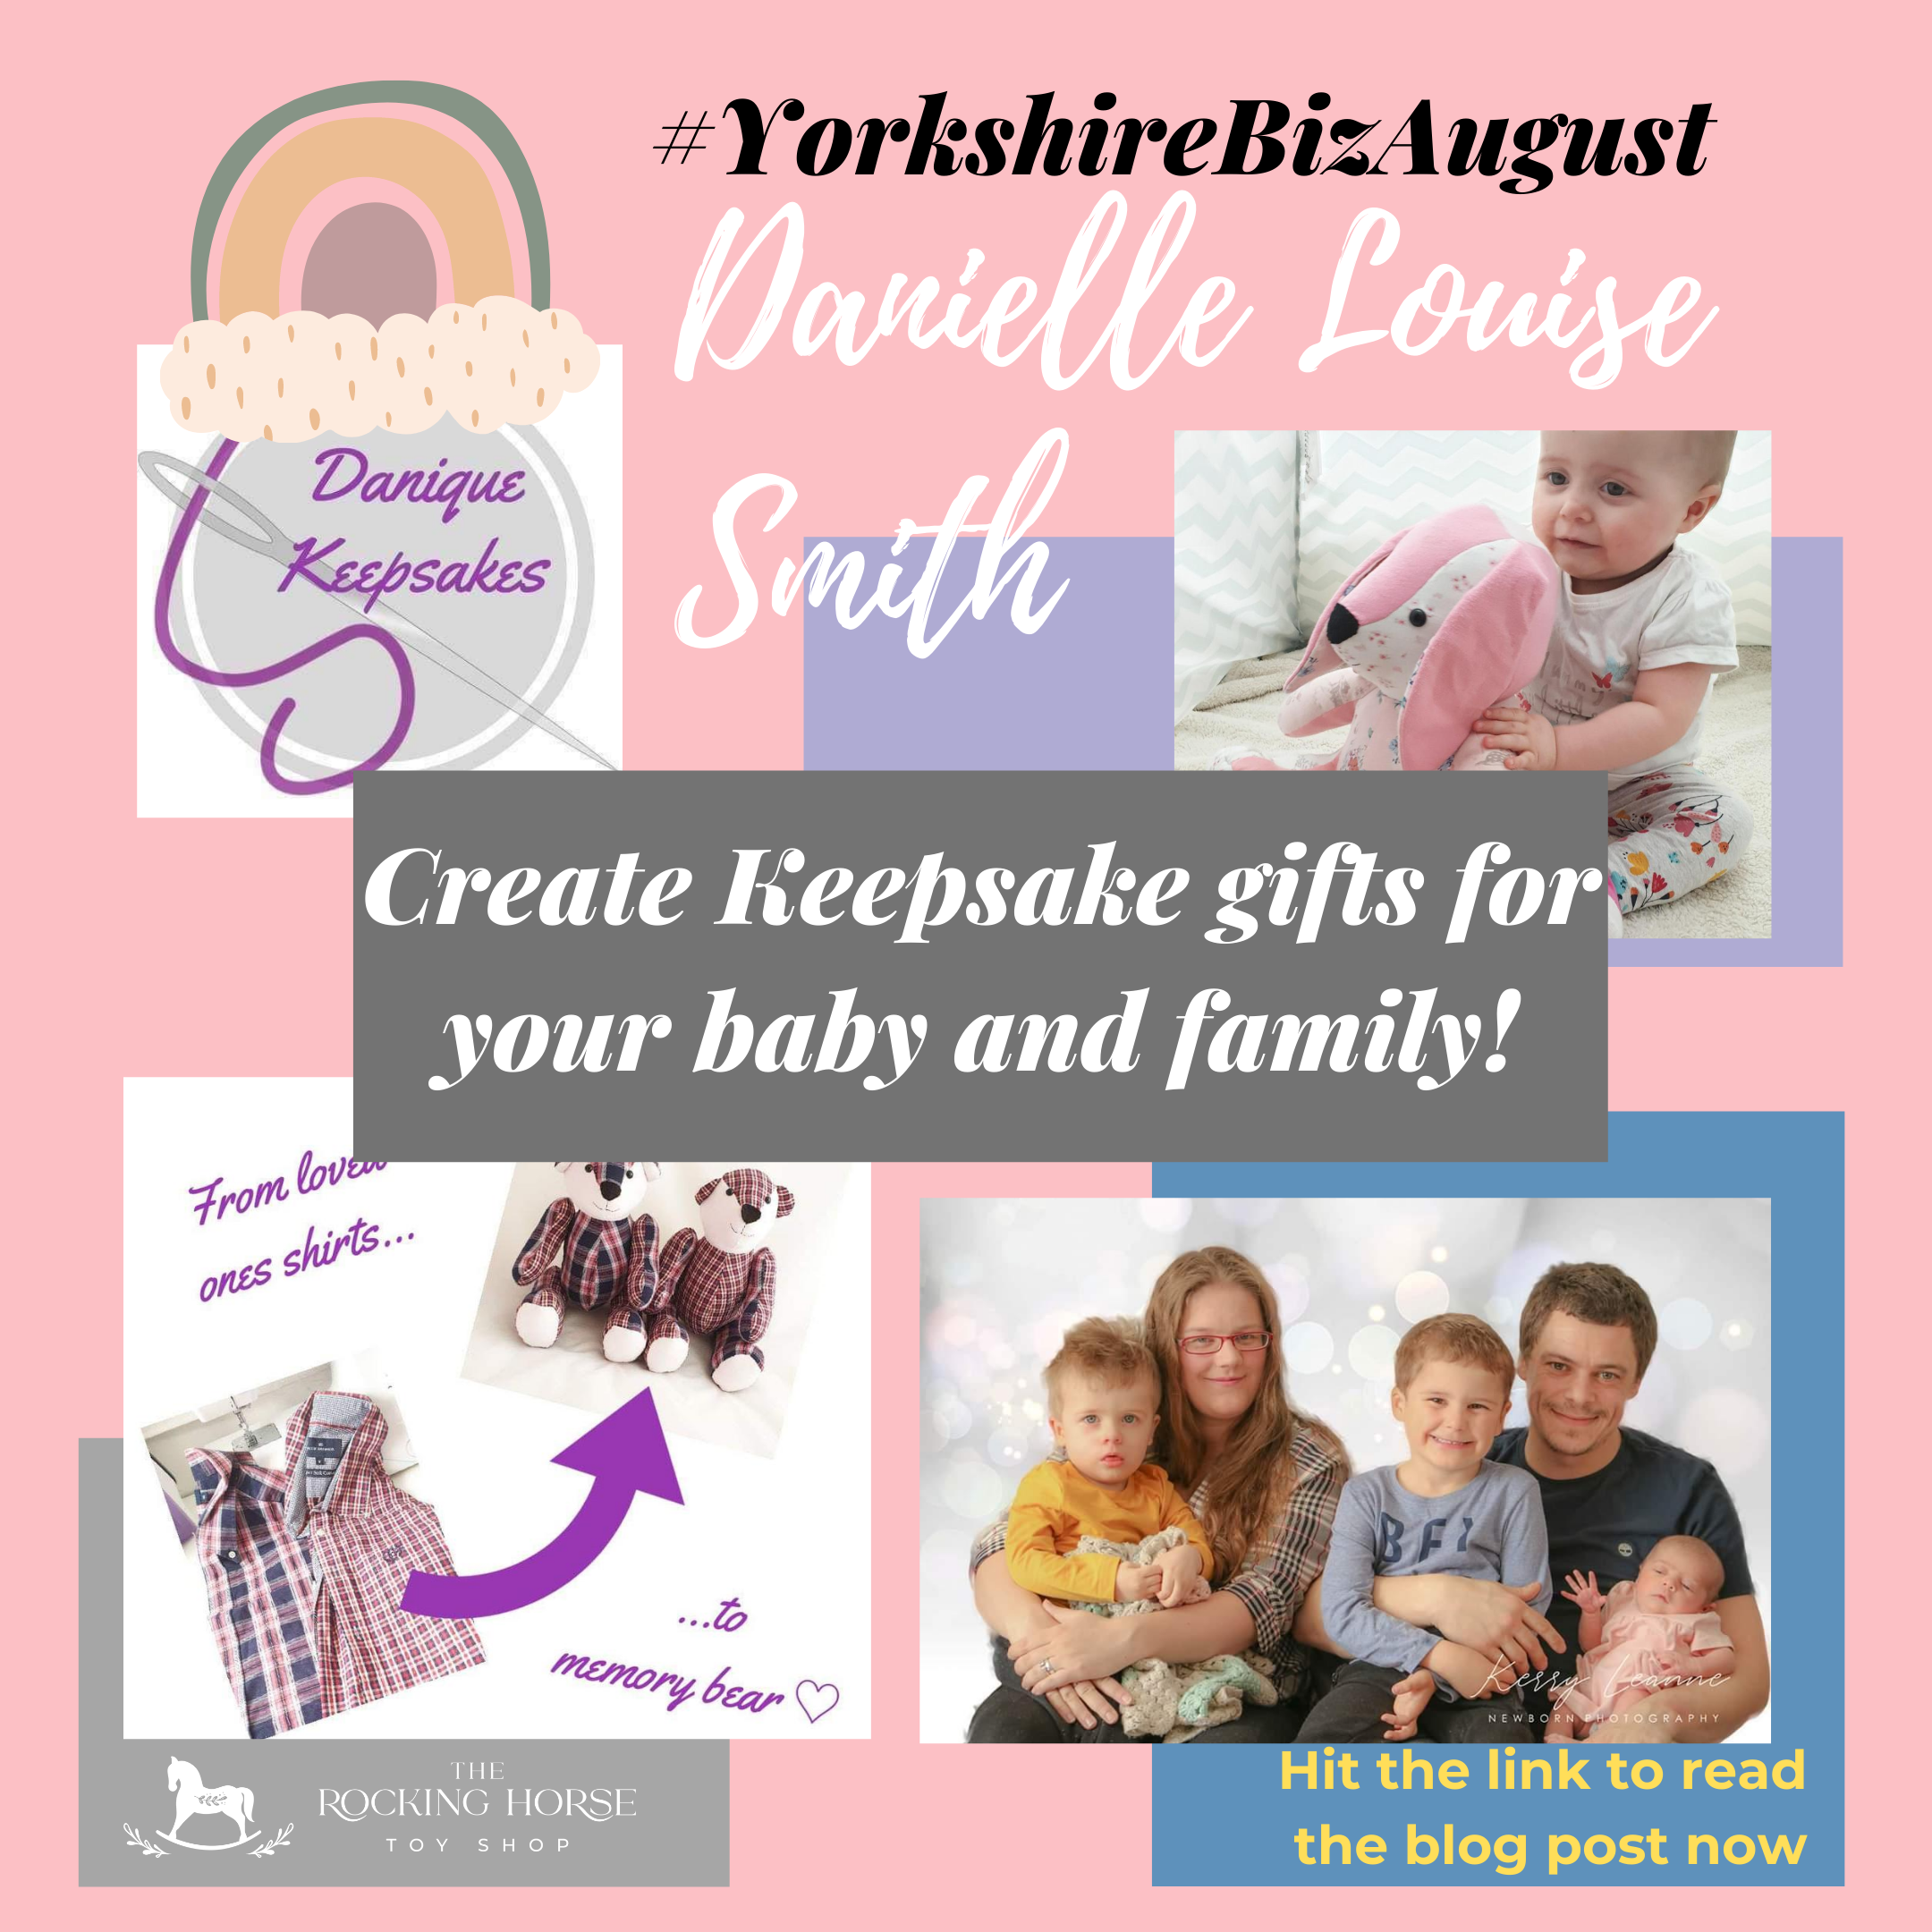 Yorkshire Biz August 03 - Danielle Louise Smith - Danique Keepsakes